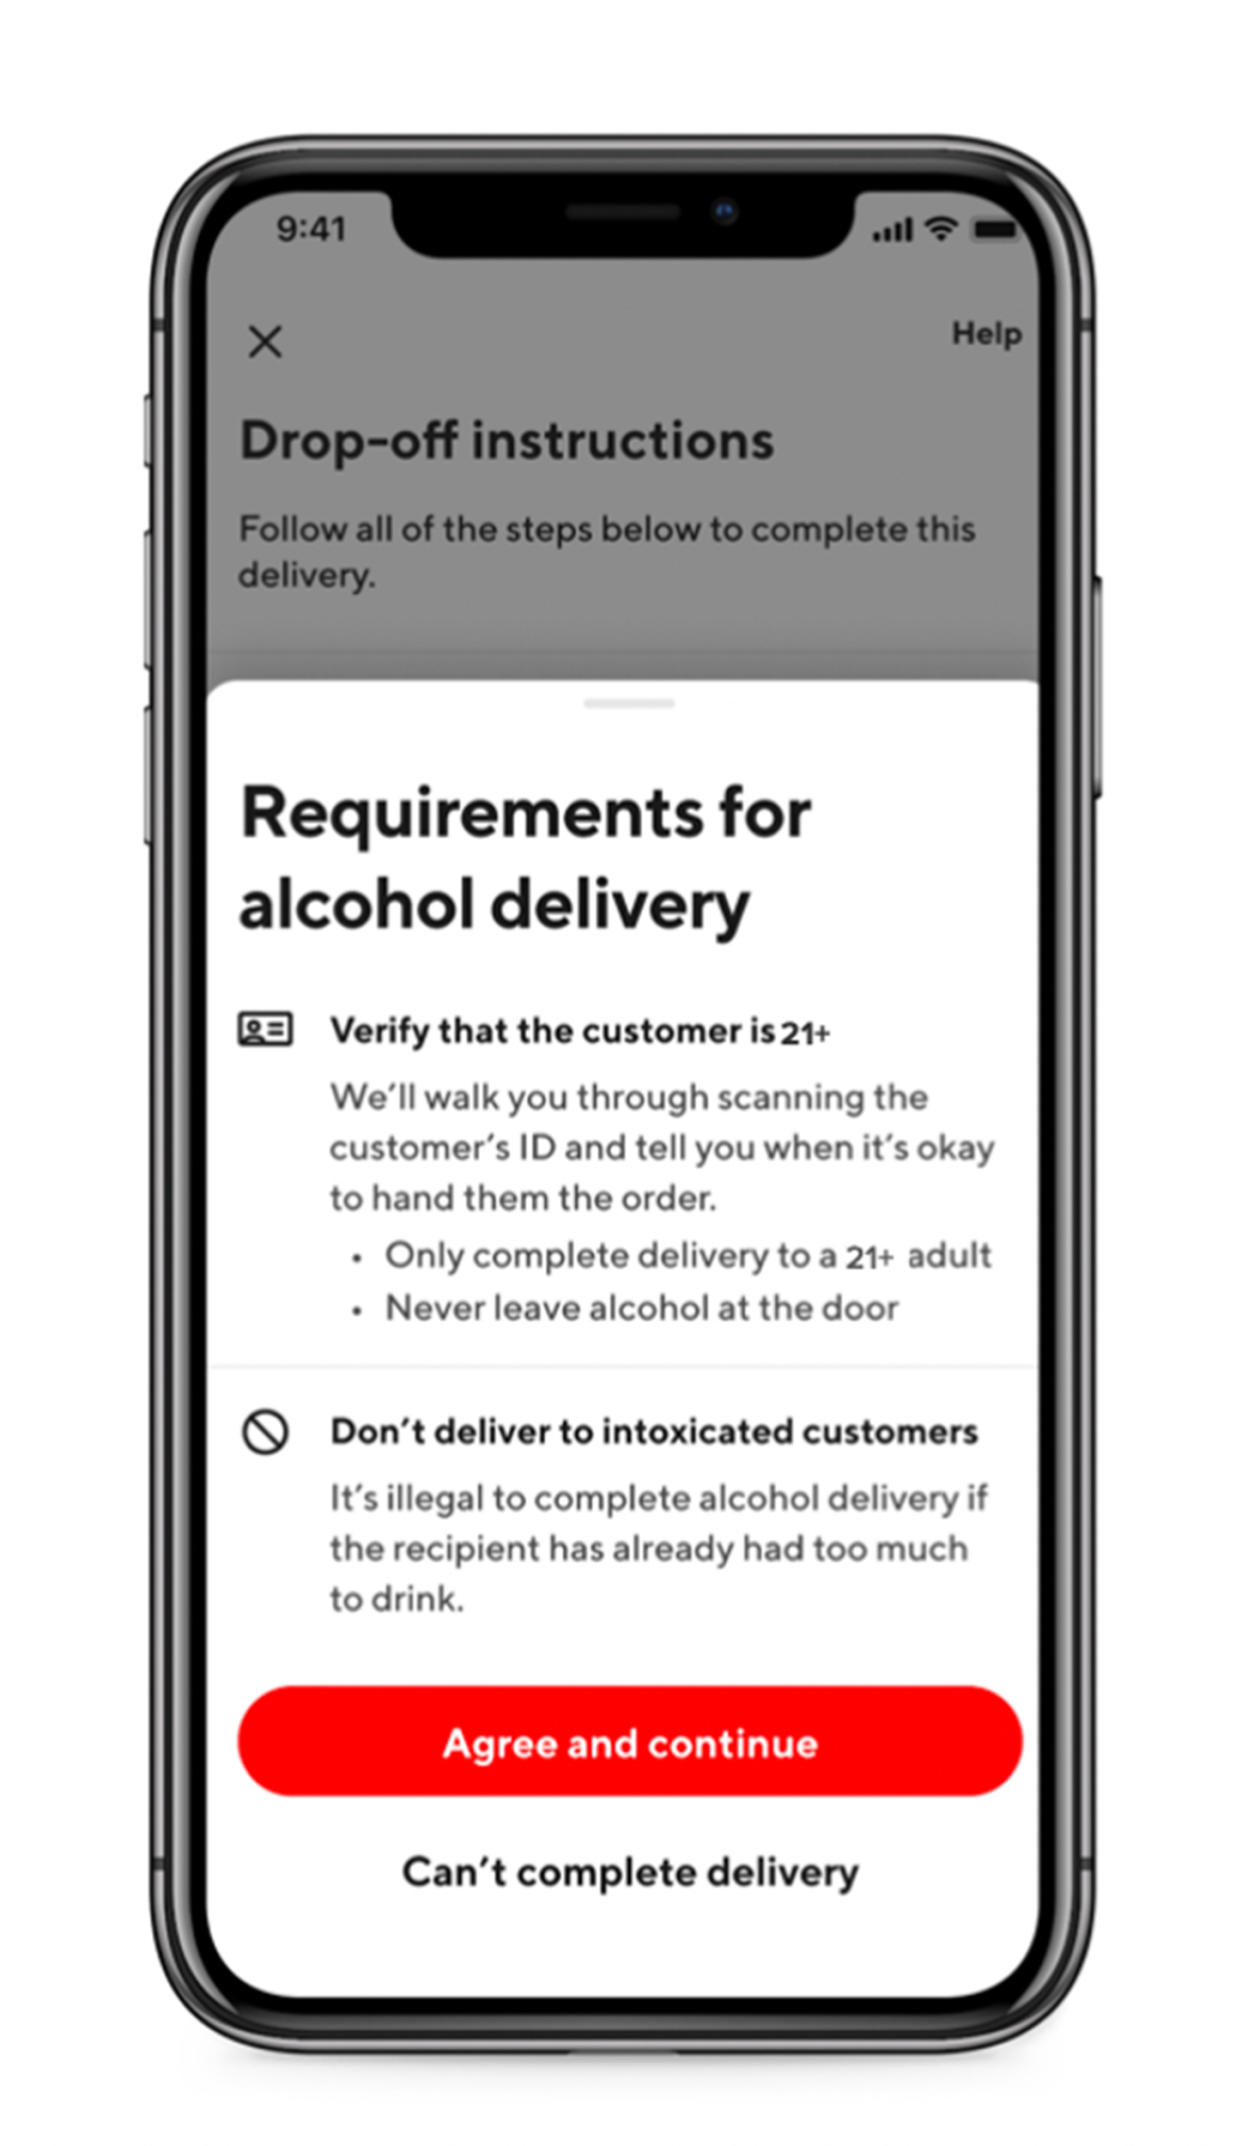 DoorDash's requirements for alcohol delivery. (DoorDash)